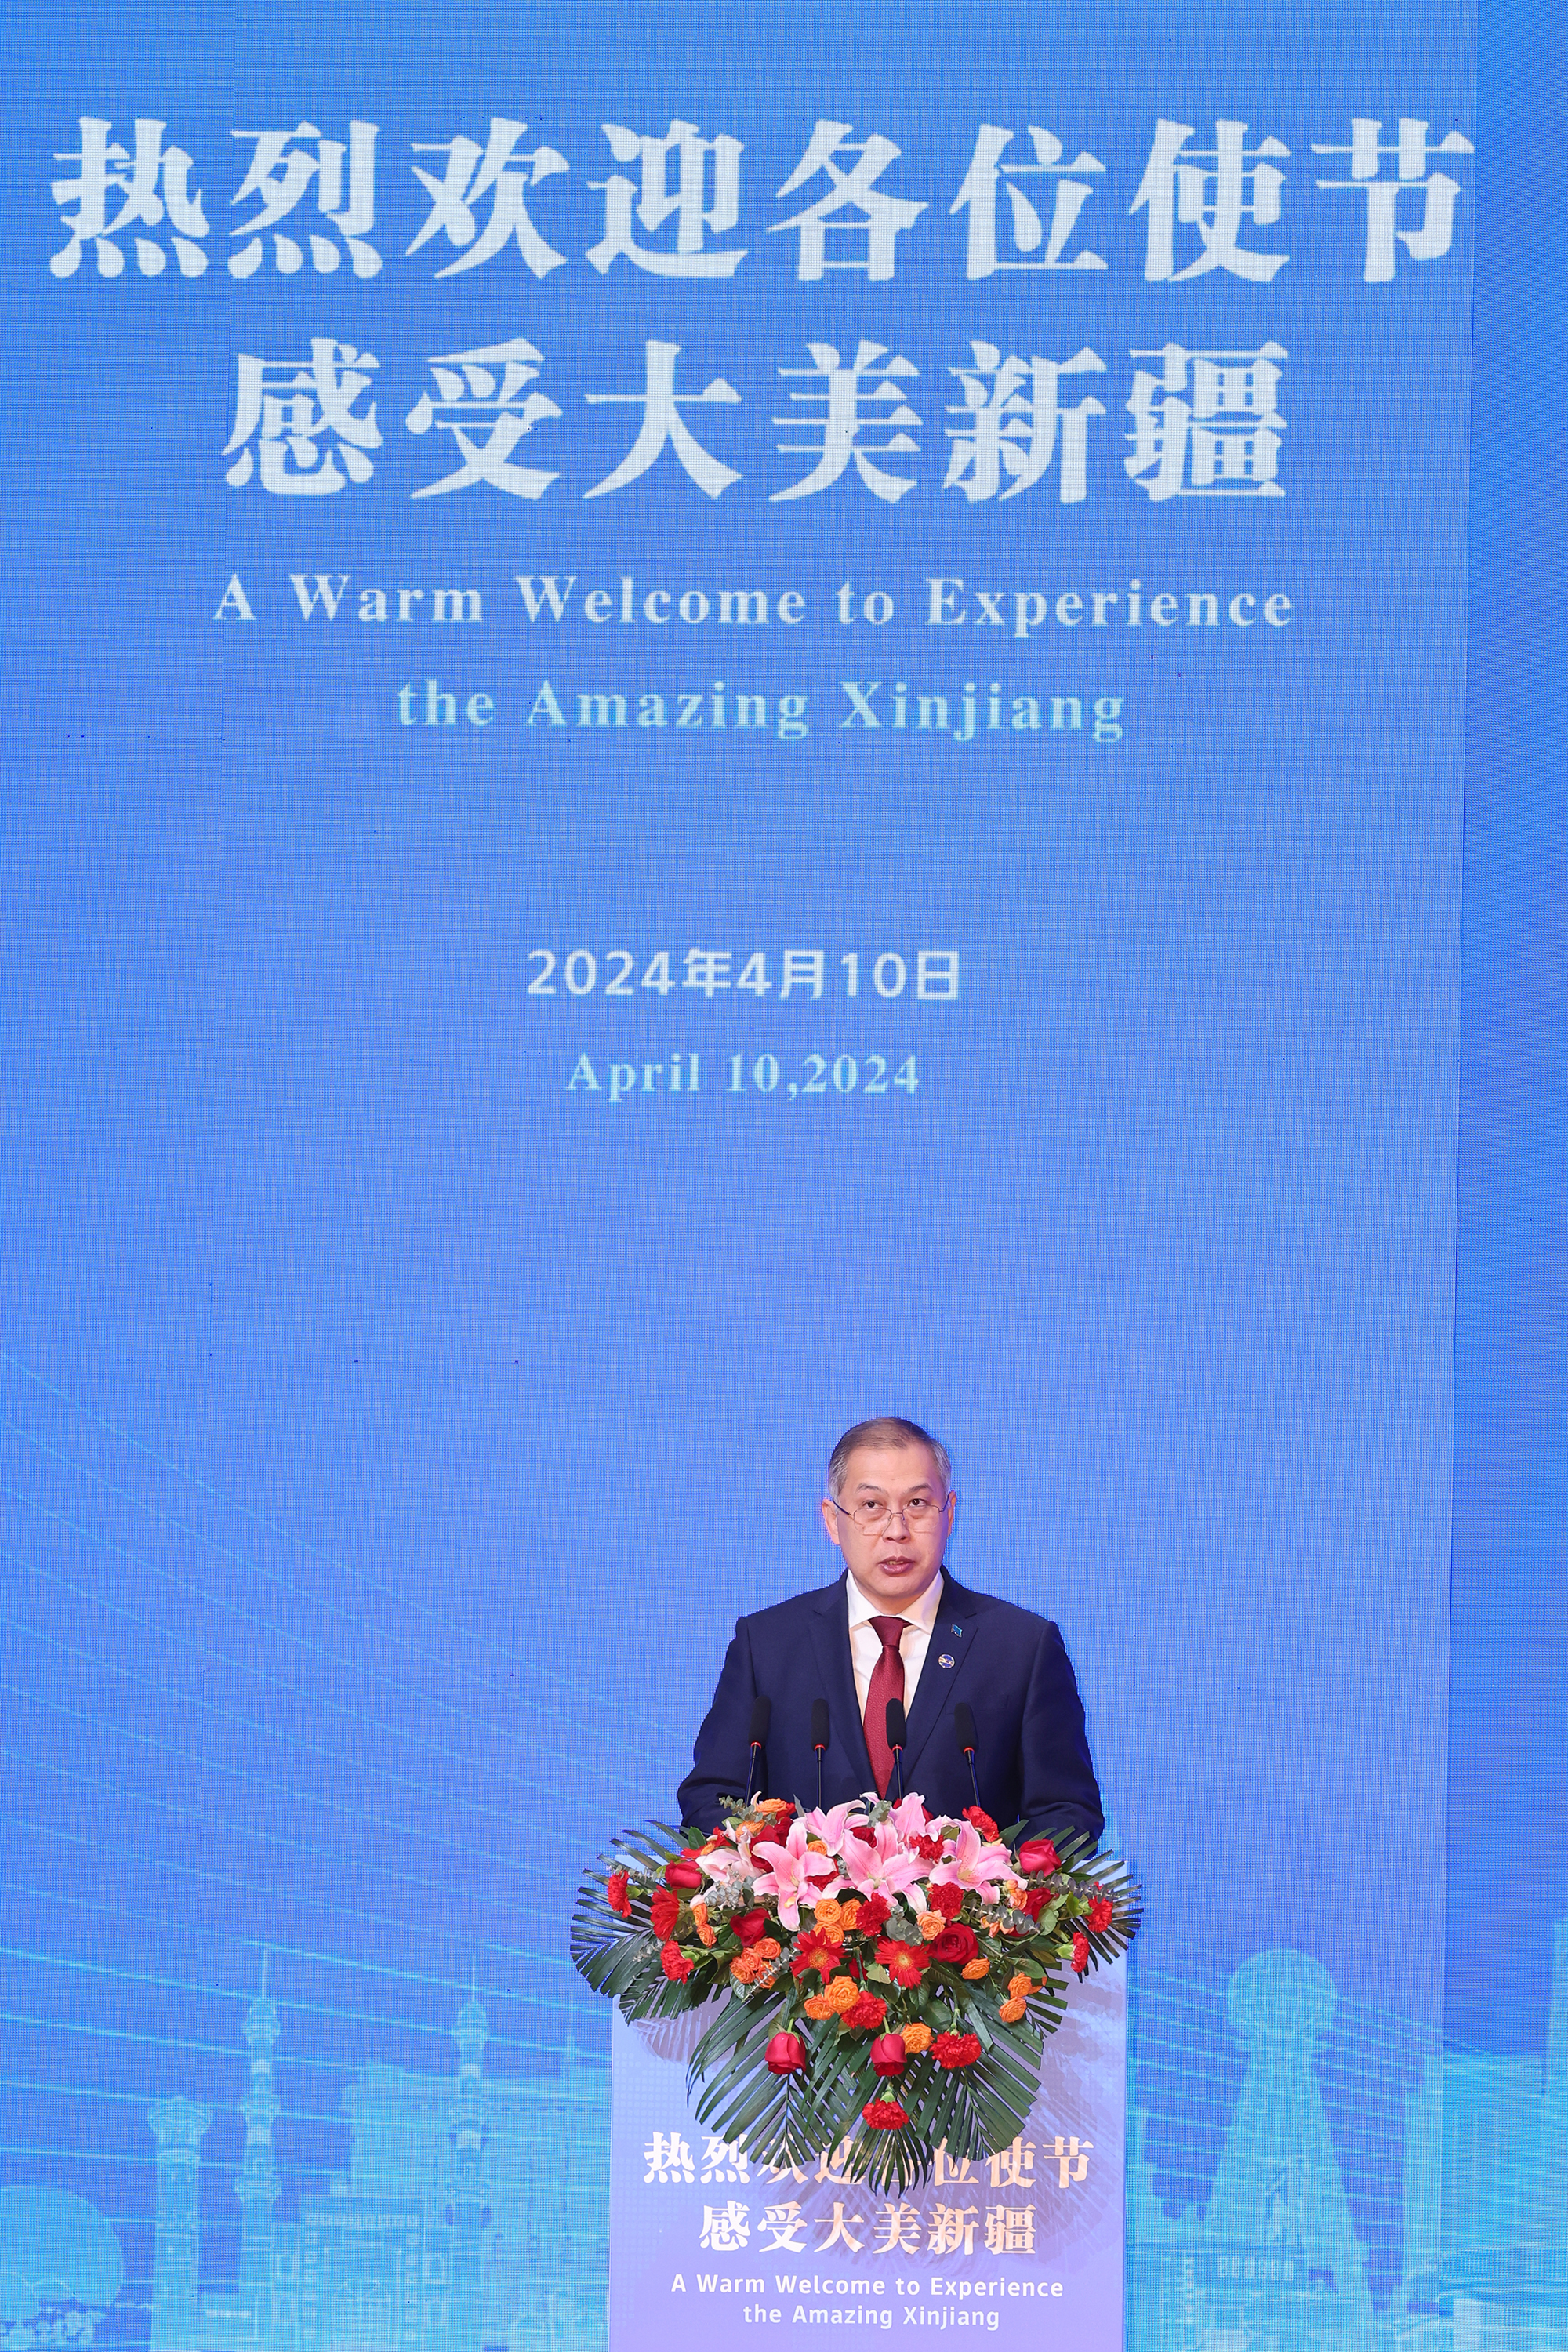 Перспективы взаимодействия РК с СУАР КНР обсуждены в Пекине